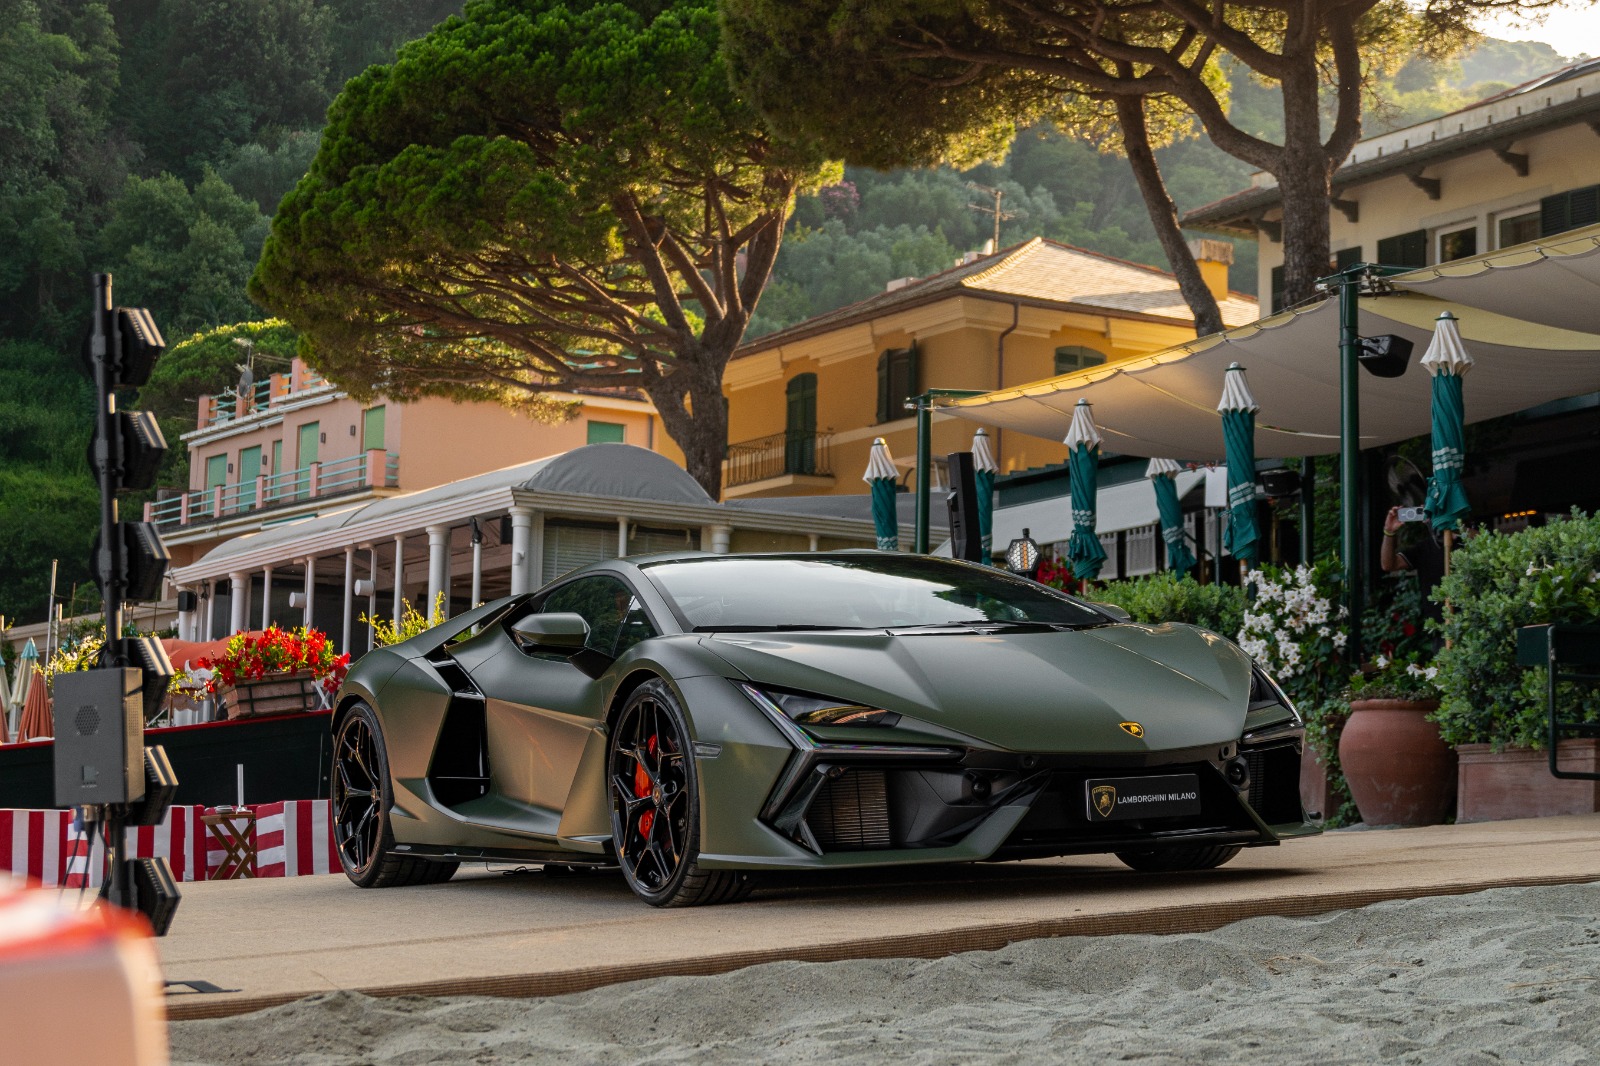 Lamborghini Milano porta innovazione e potenza in riva al mare